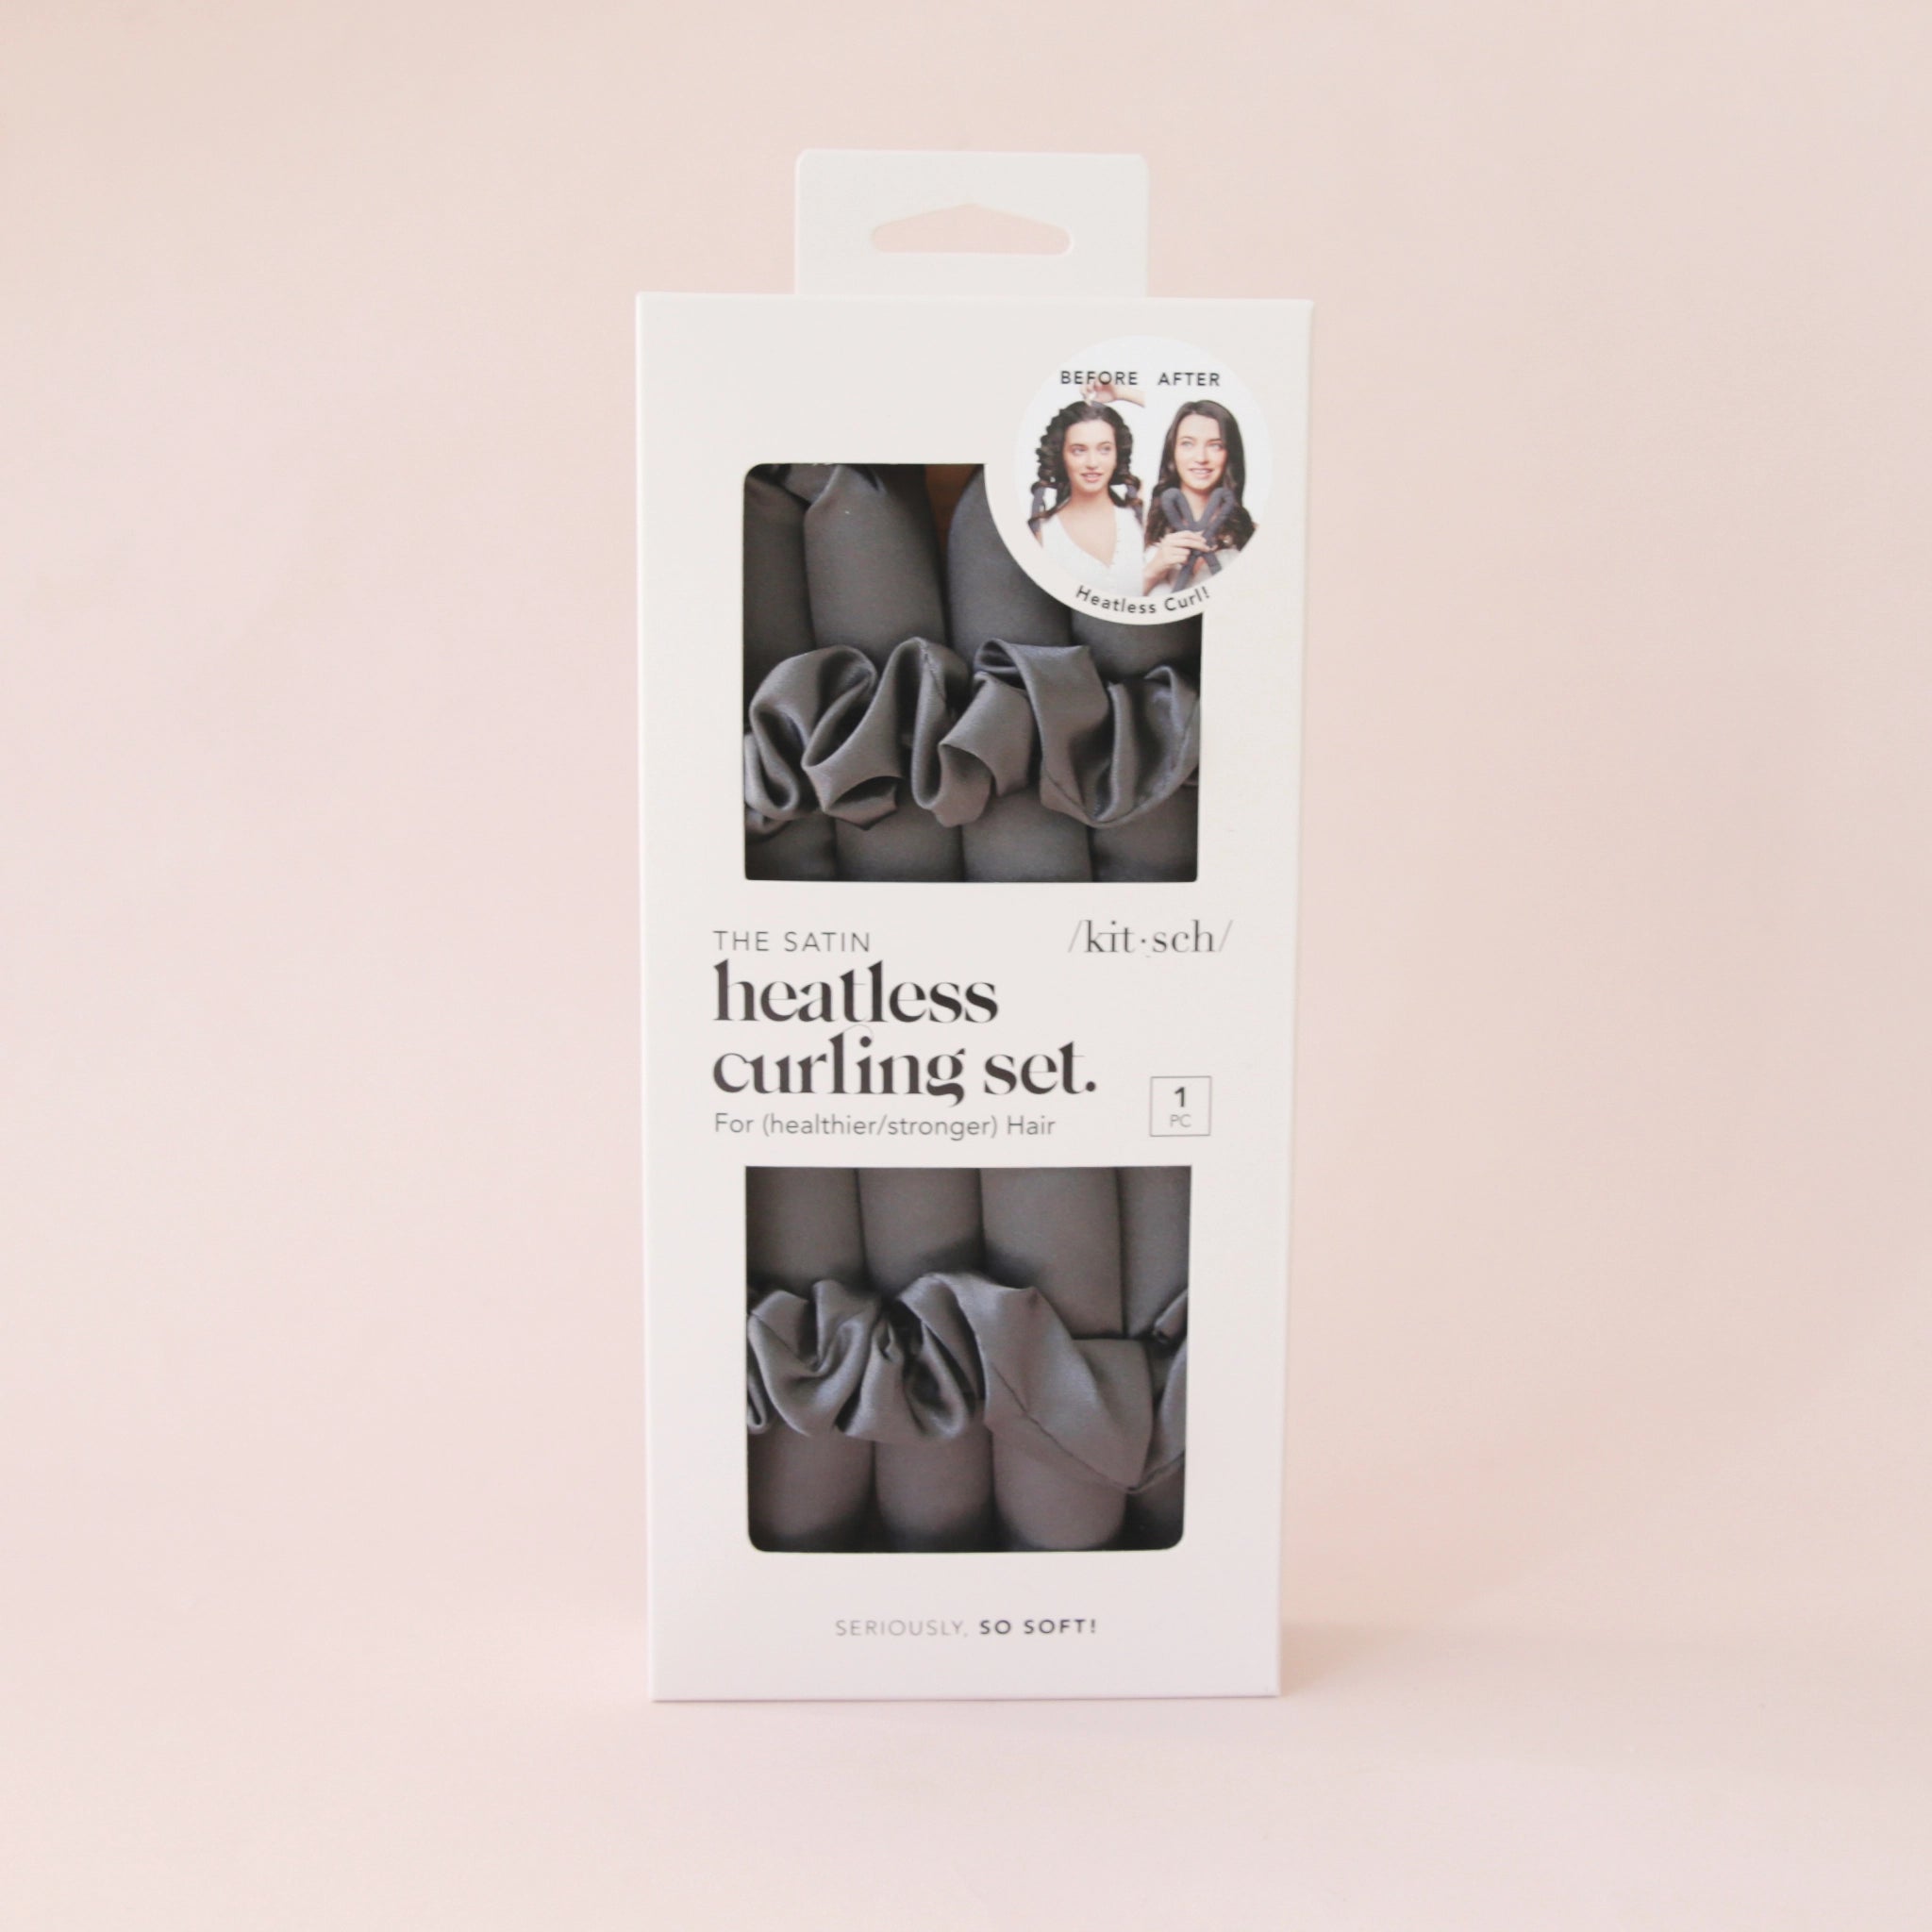 Black satin heatless curlers set in a cardboard packaging.